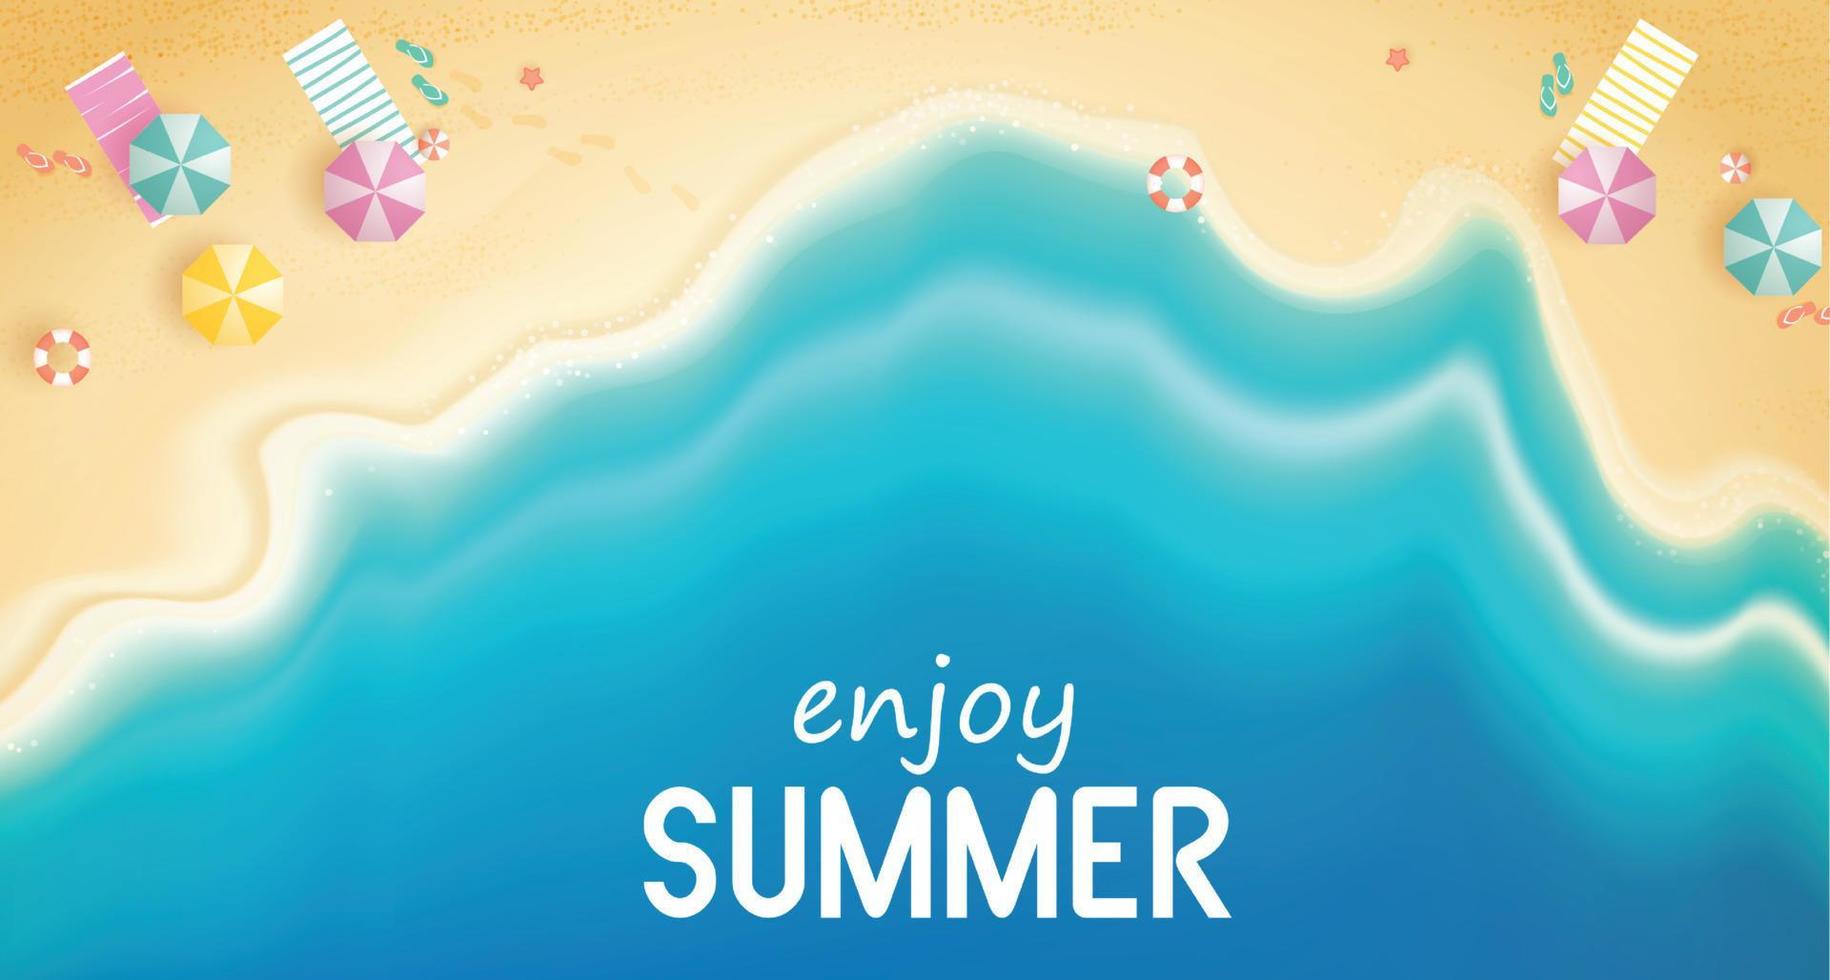 verano de vista superior con equipo de juego de agua colocado en la playa. Fondo de playa con anillo de natación, sandalias, sombrillas, pelotas, estrellas de mar y mar. ilustración vectorial. vector